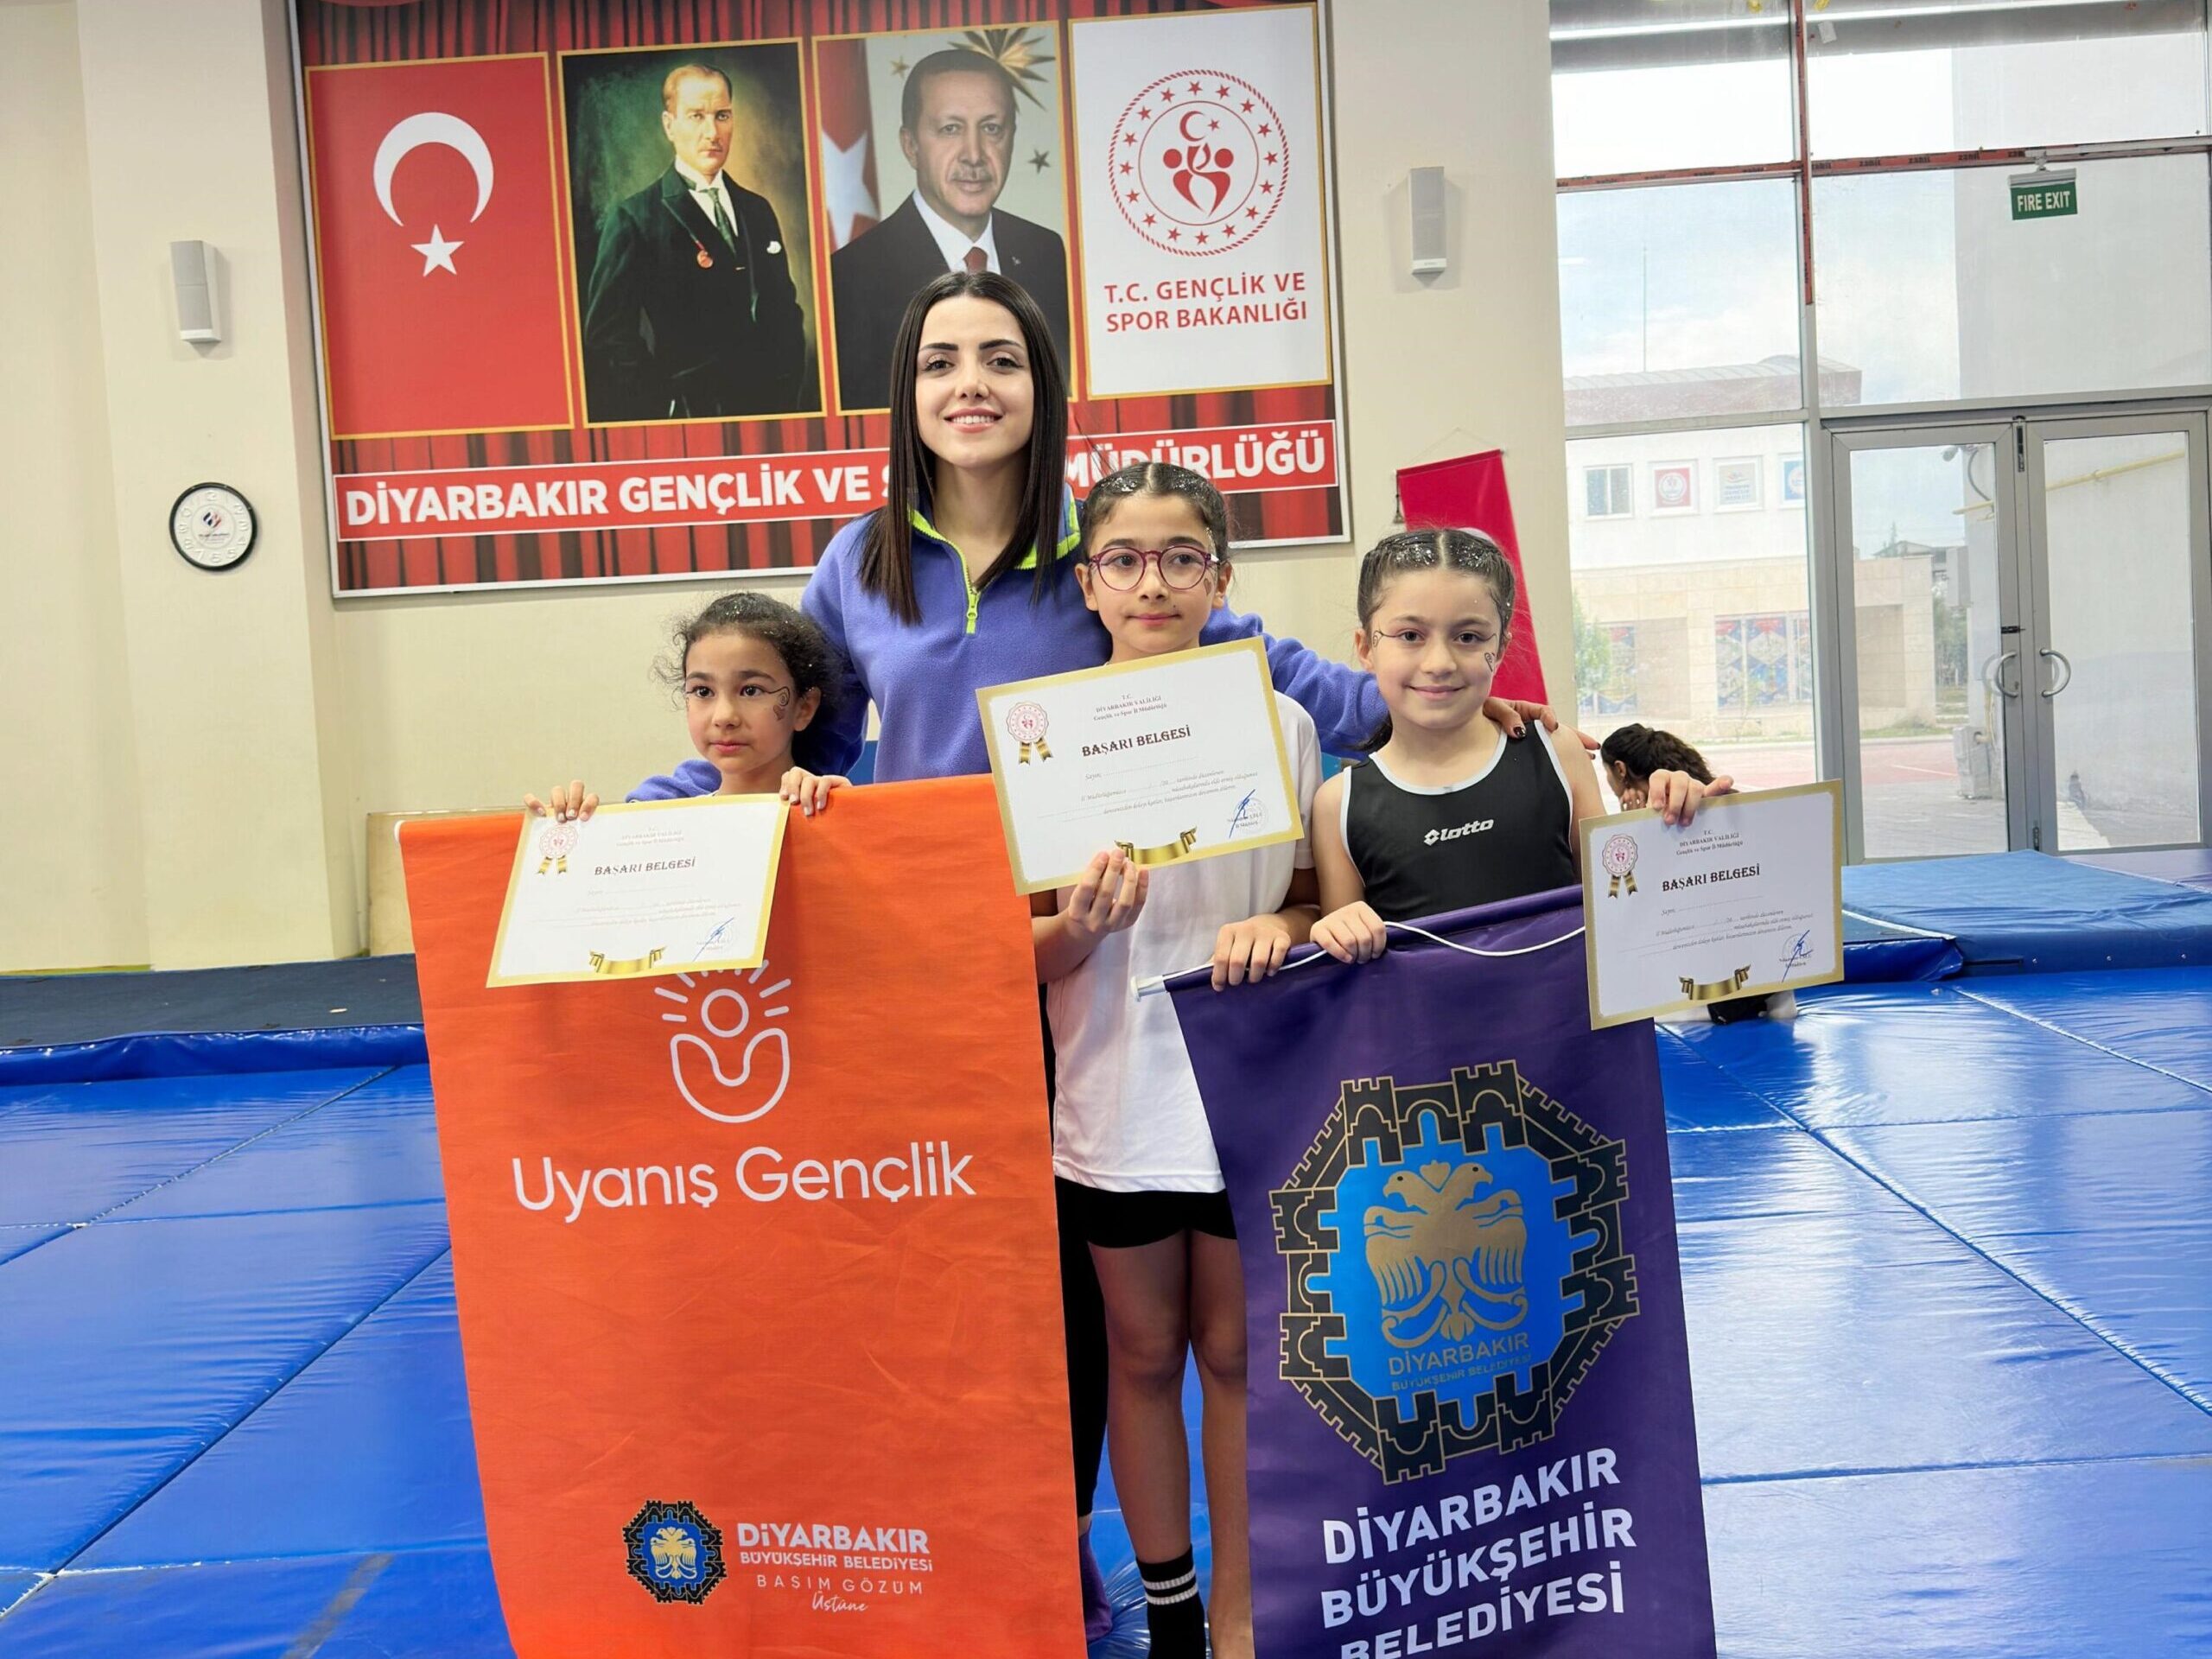 Diyarbakırlı Minik cimnastikçilerden büyük başarı!